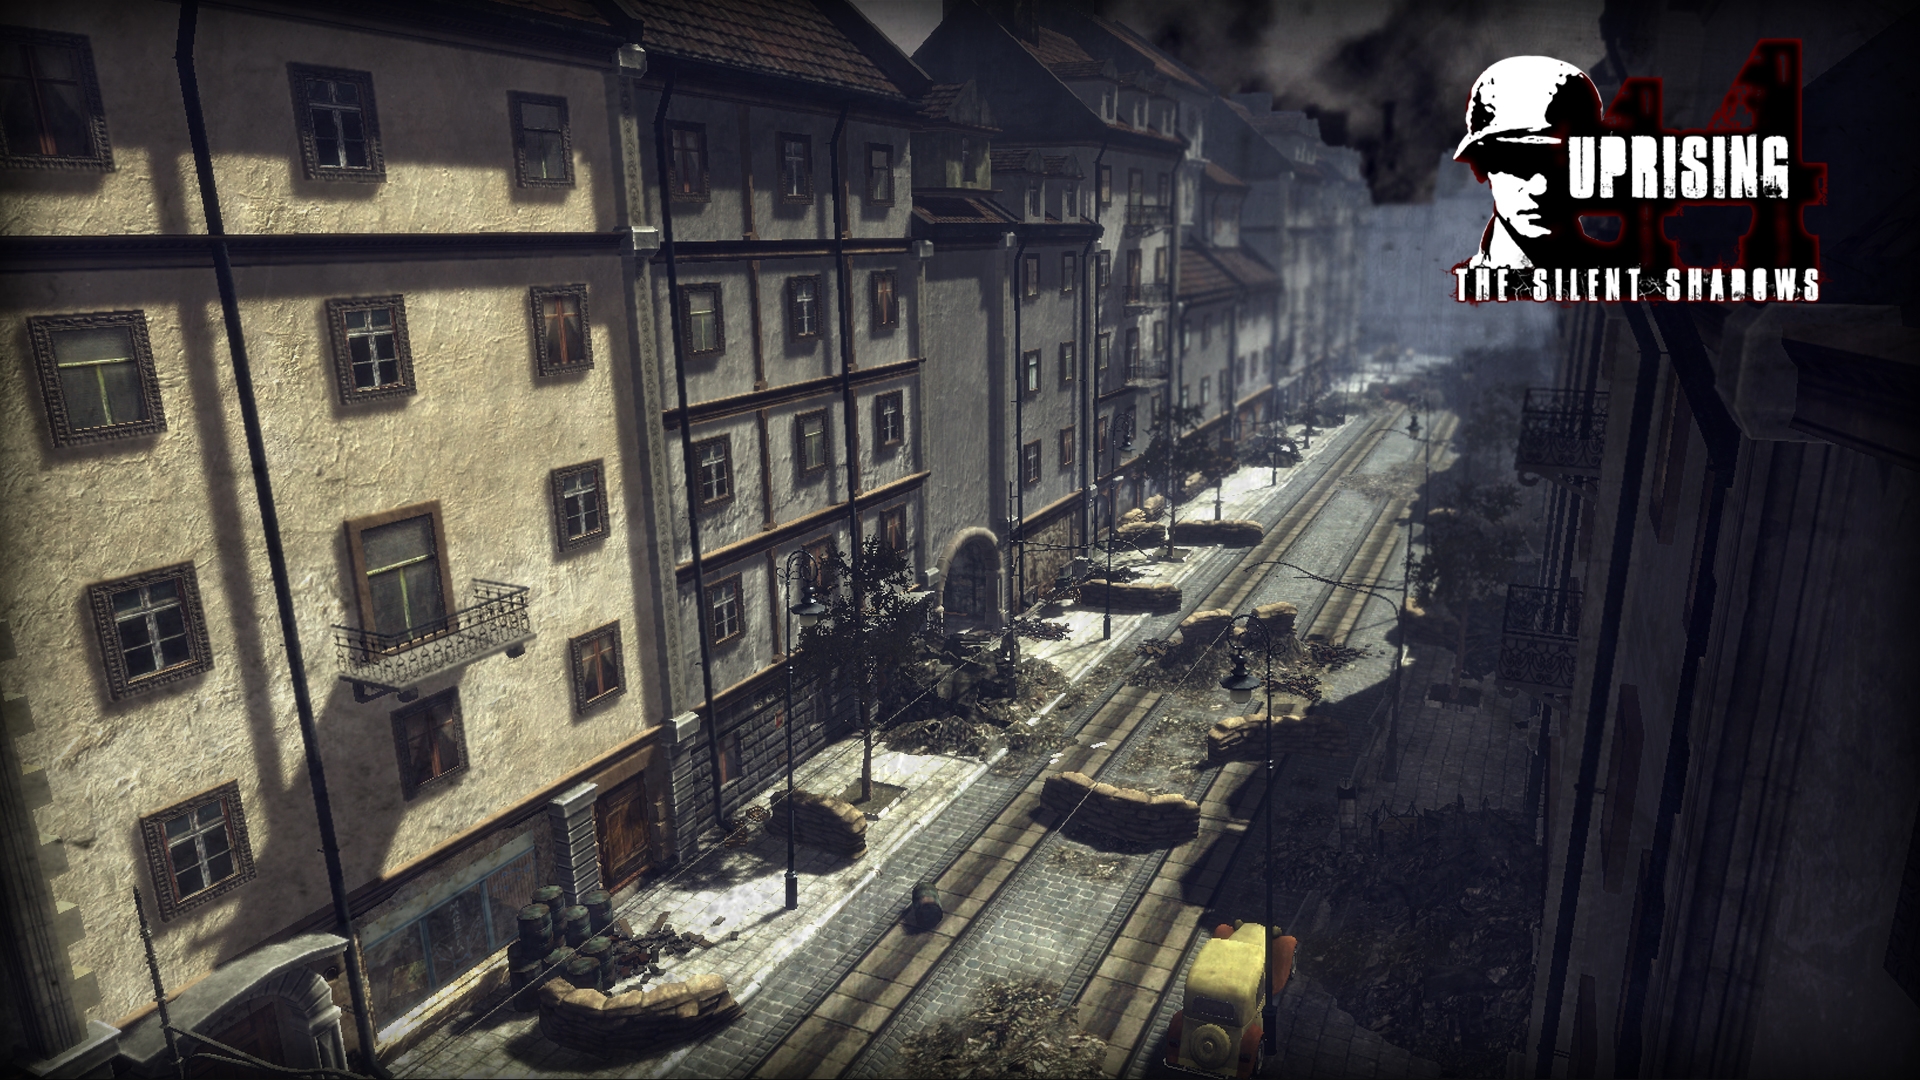 Скриншот из игры Uprising44: The Silent Shadows под номером 3